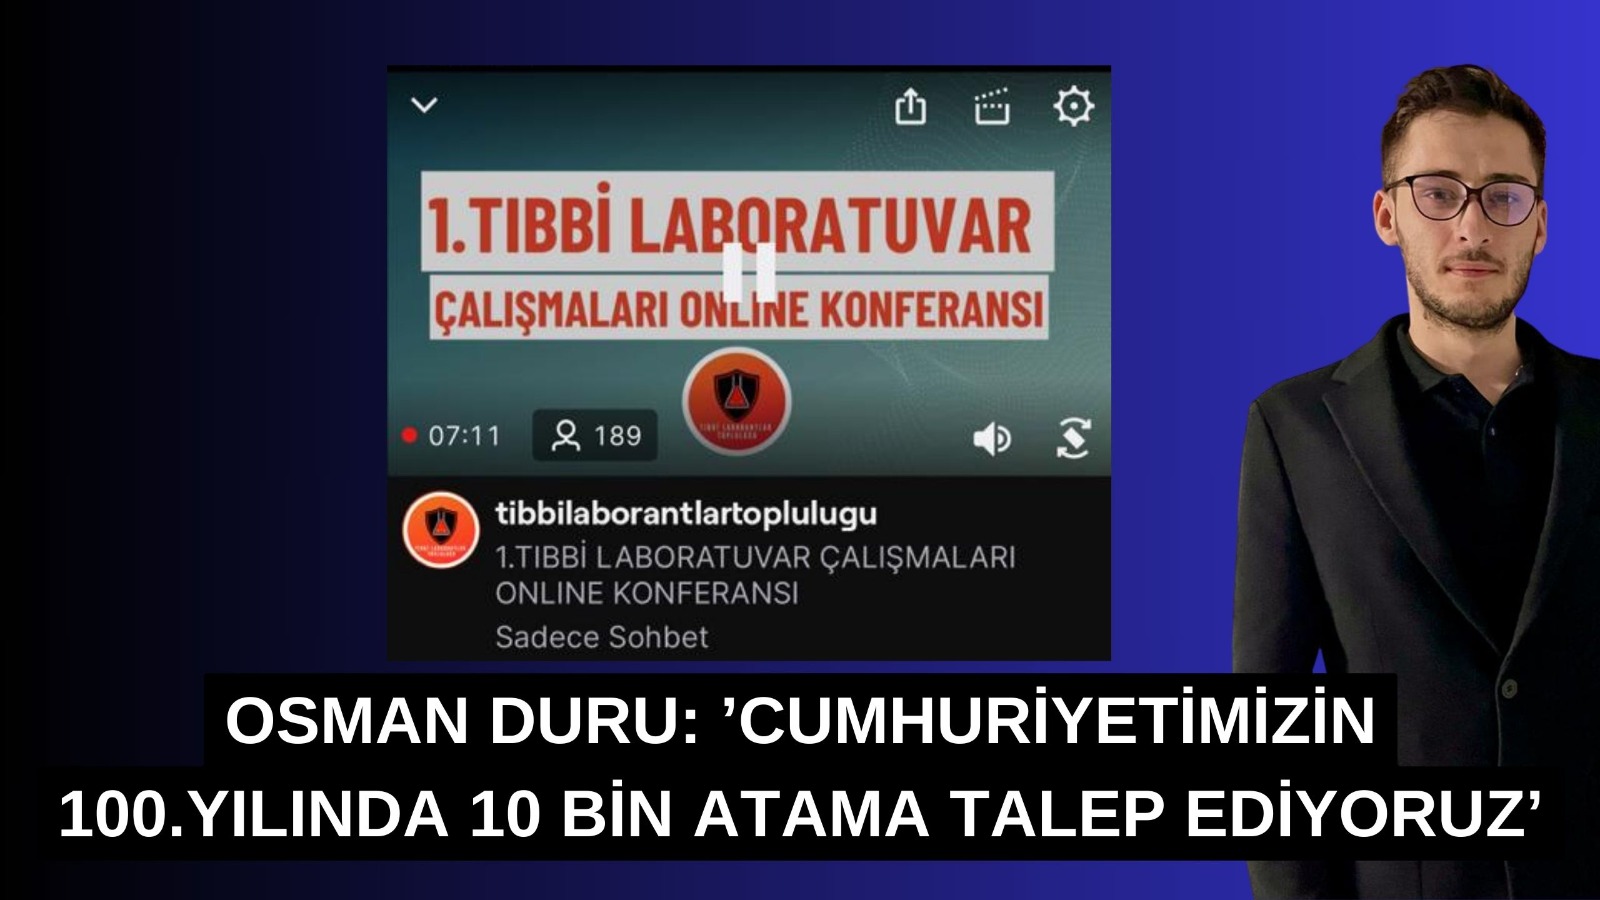 Osman Duru: Cumhuriyetimizin 100. yılında, 10 bin atama talep ediyoruz